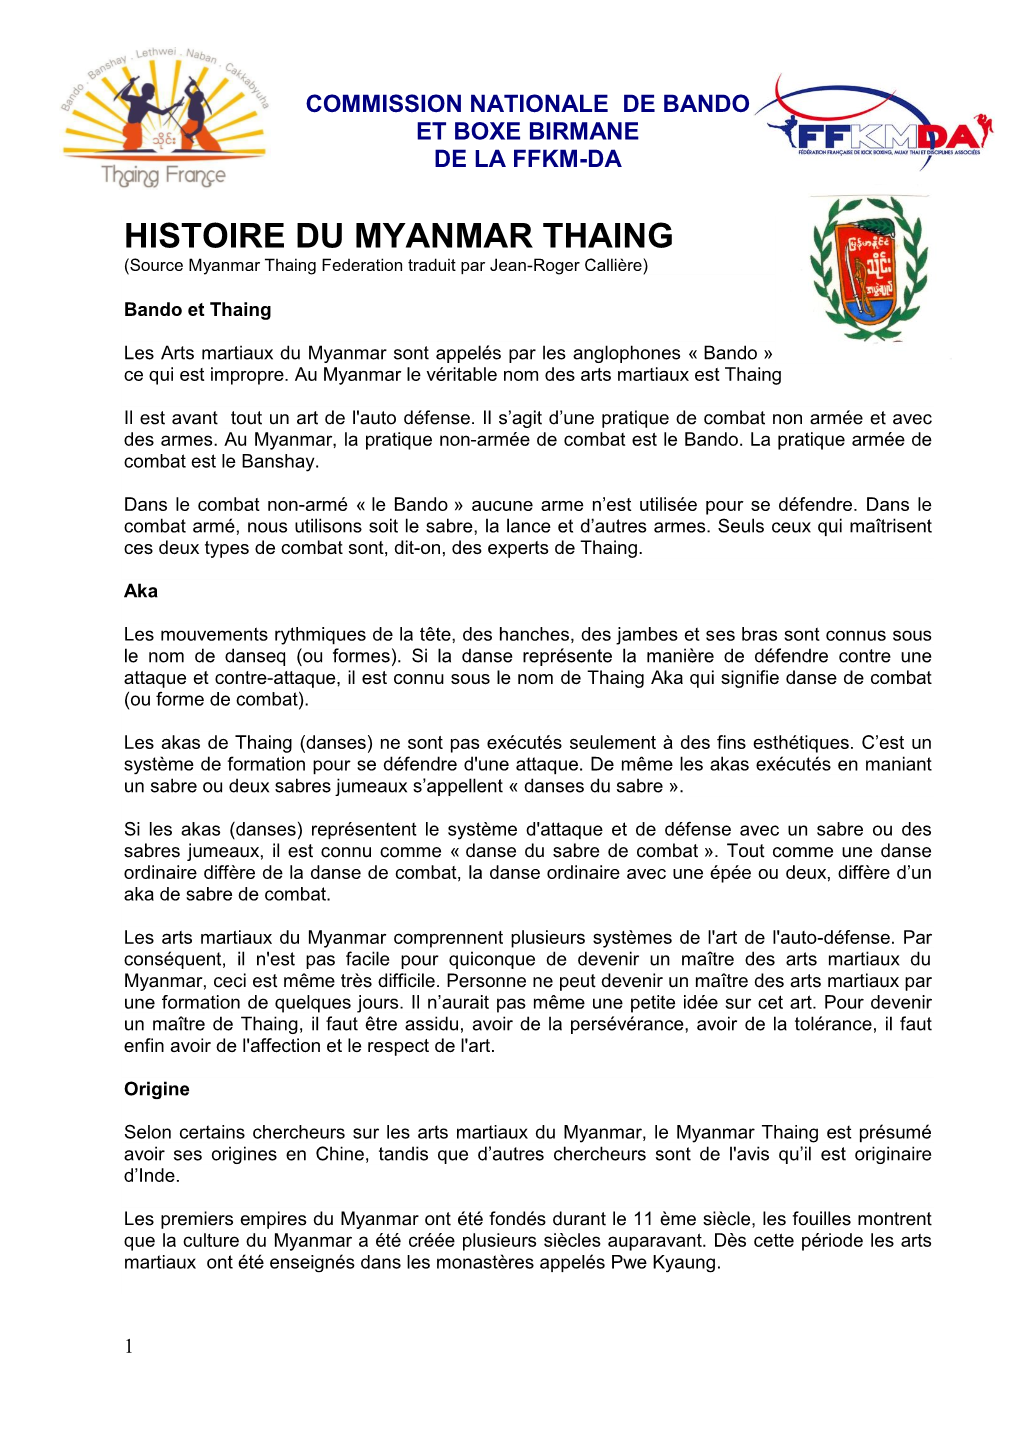 History of Myanmar Thaing